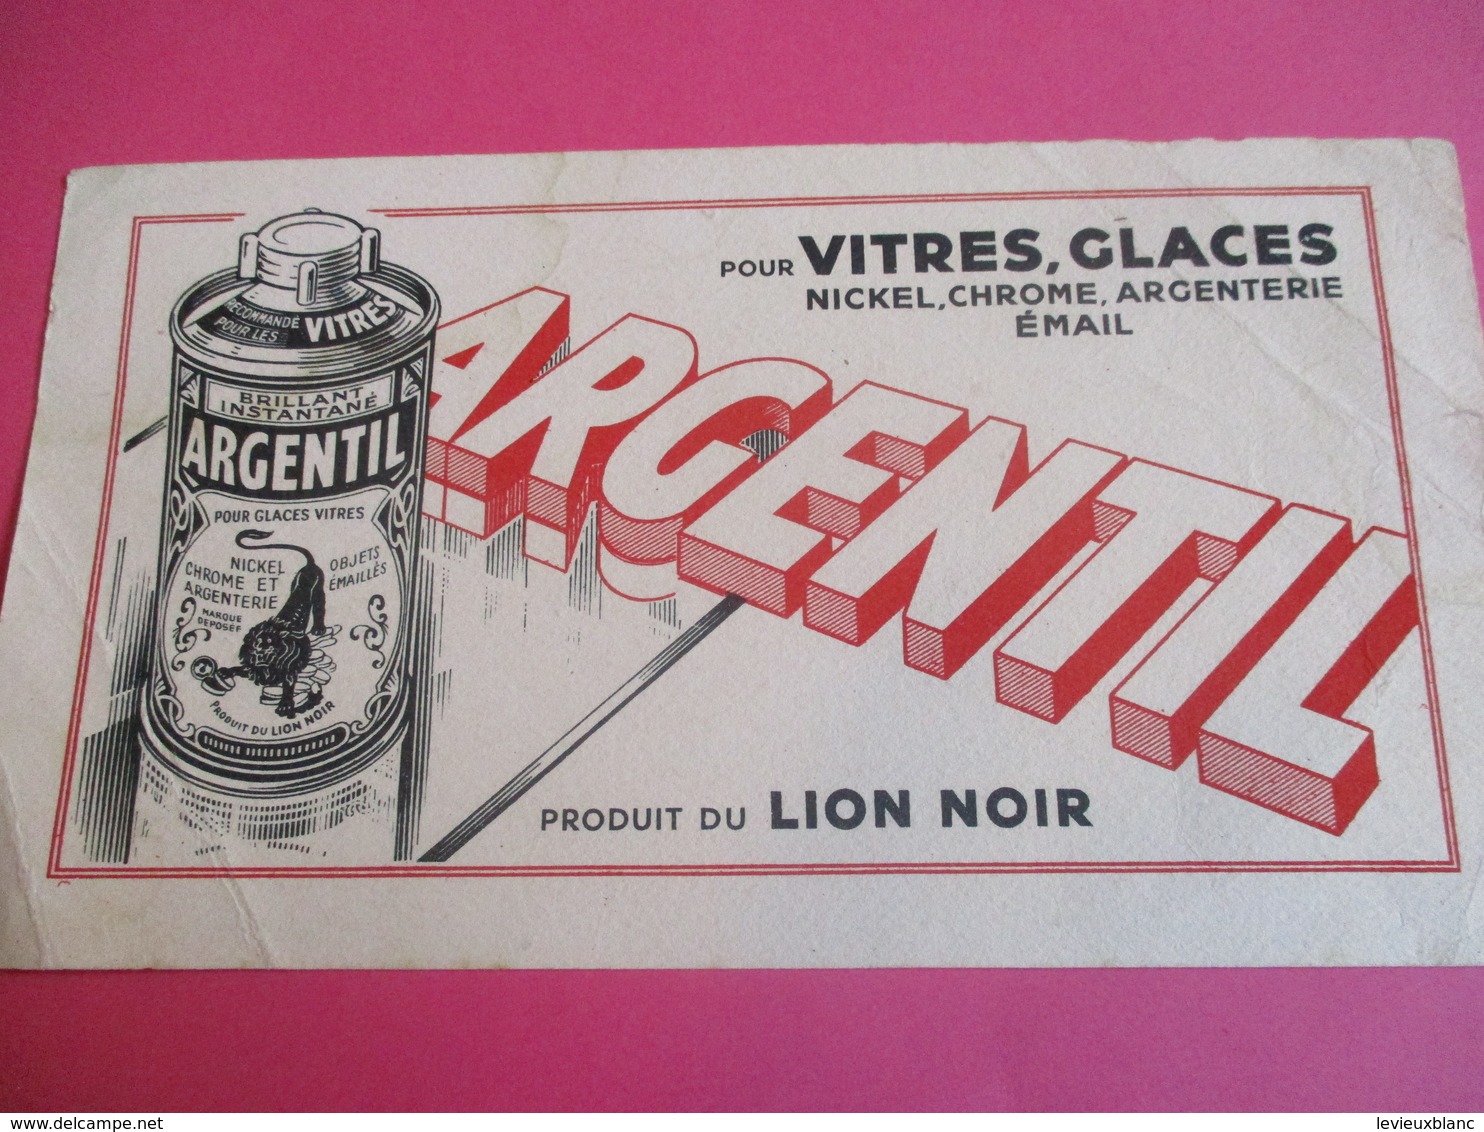 2 Buvards /Nickel , Chrome Et Argenterie/ ARGENTIL/ Produit Du LION NOIR / Brillant Liquide/ Vers 1940-1960    BUV328 - Wash & Clean